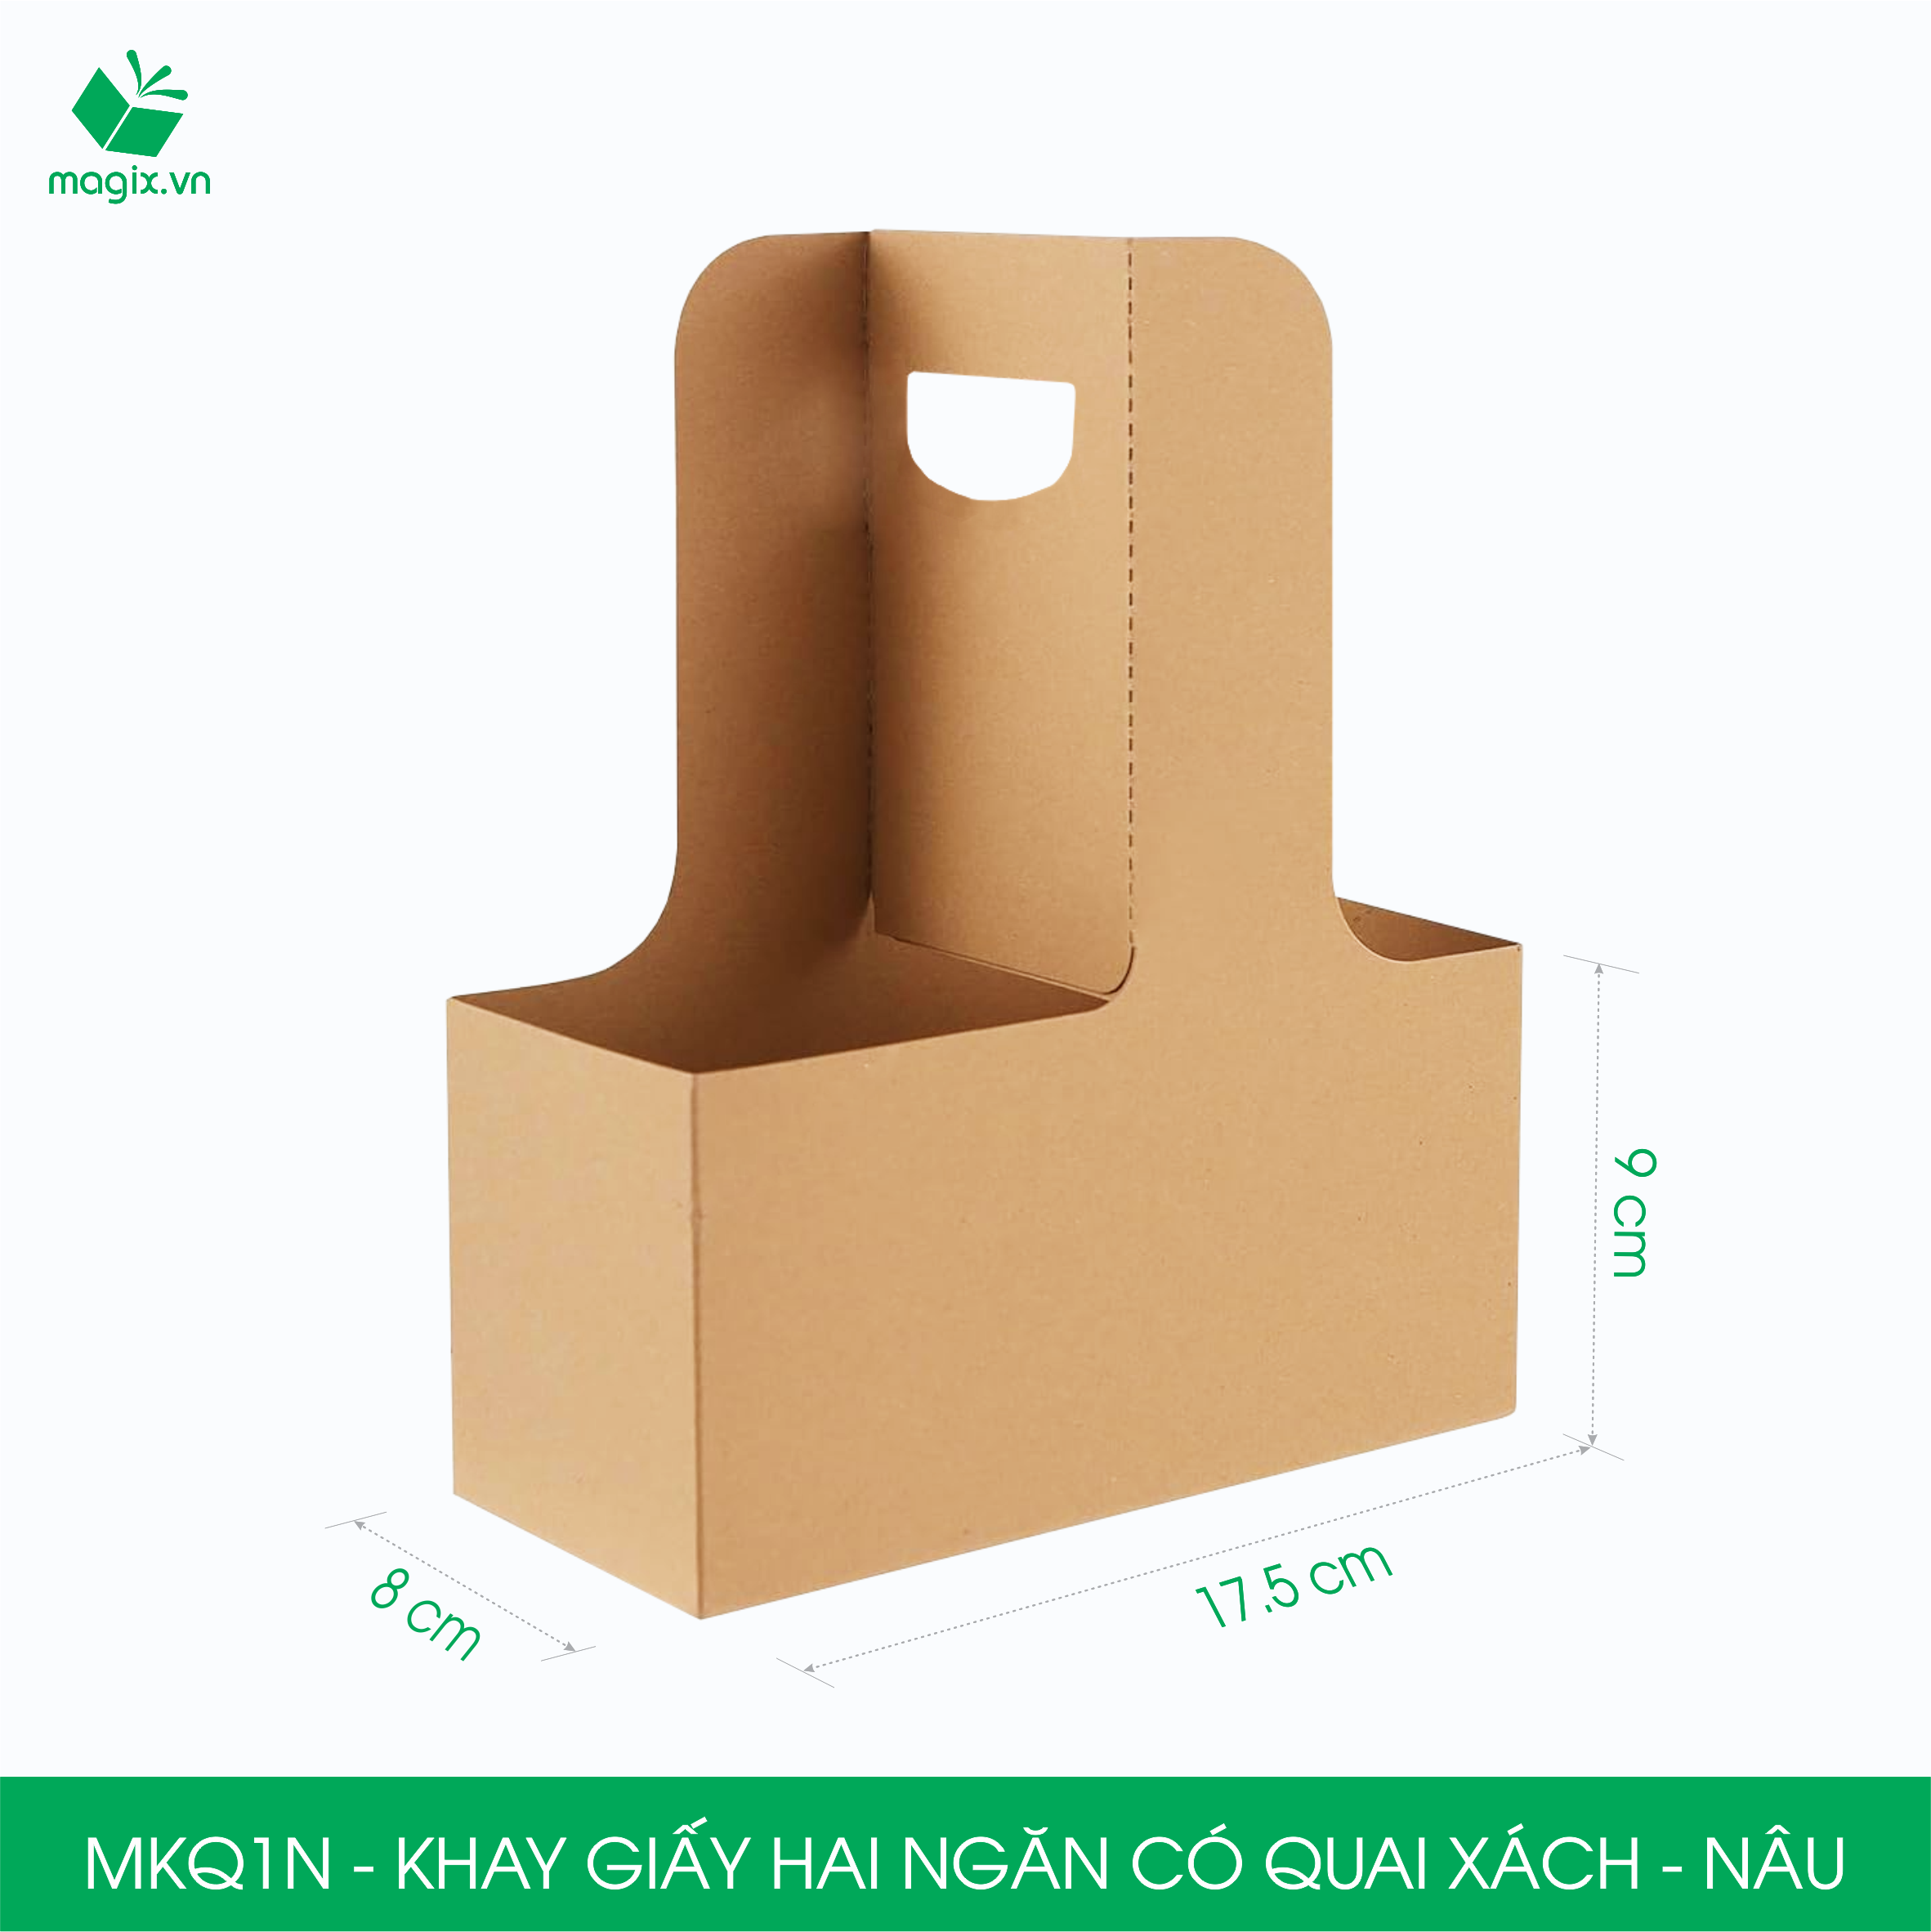 MKQ1N - 17.5x8x9 cm - Combo 60 Khay giấy 2 ngăn quai xách màu nâu siêu chắc, hộp giấy 2 ngăn chống thấm đựng ly nước, hoa và quà tặng